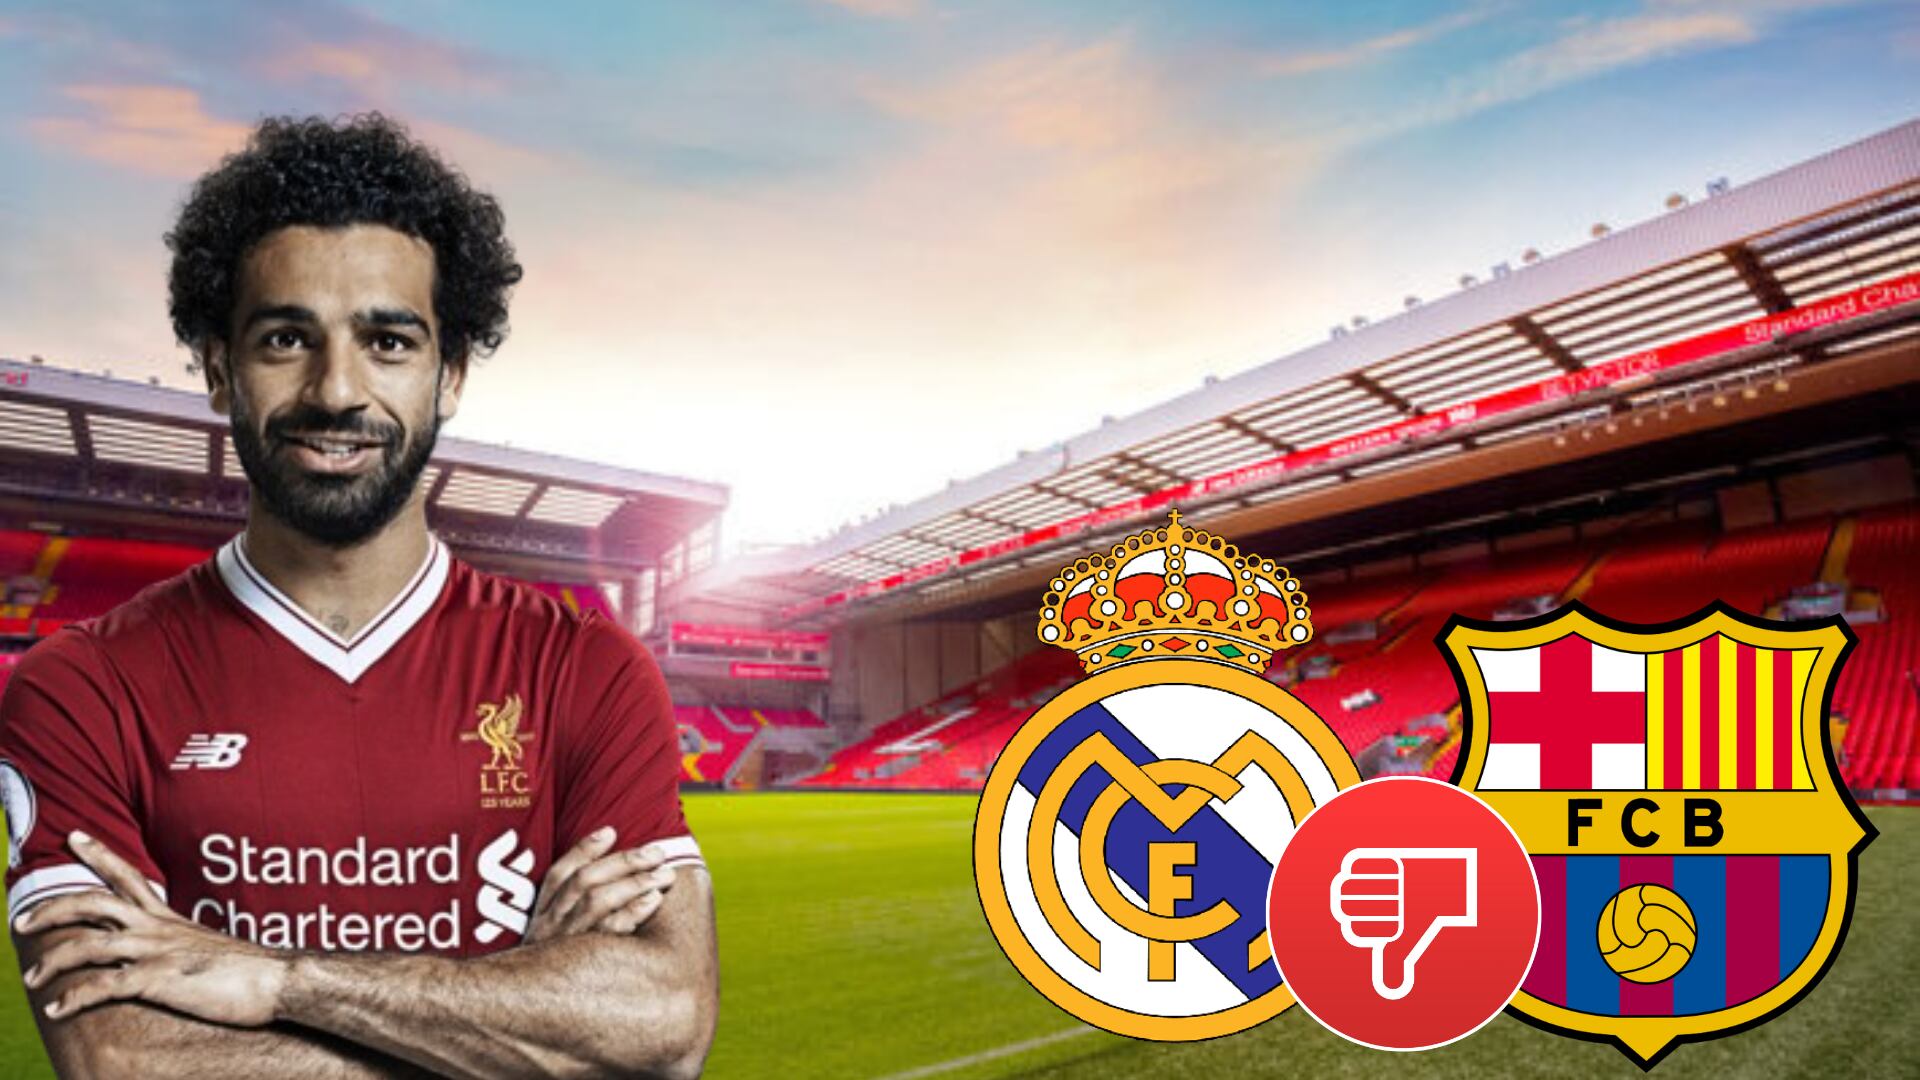 Lo echaron Madrid y Barça, ahora Liverpool lo quiere si Salah se va a Arabia